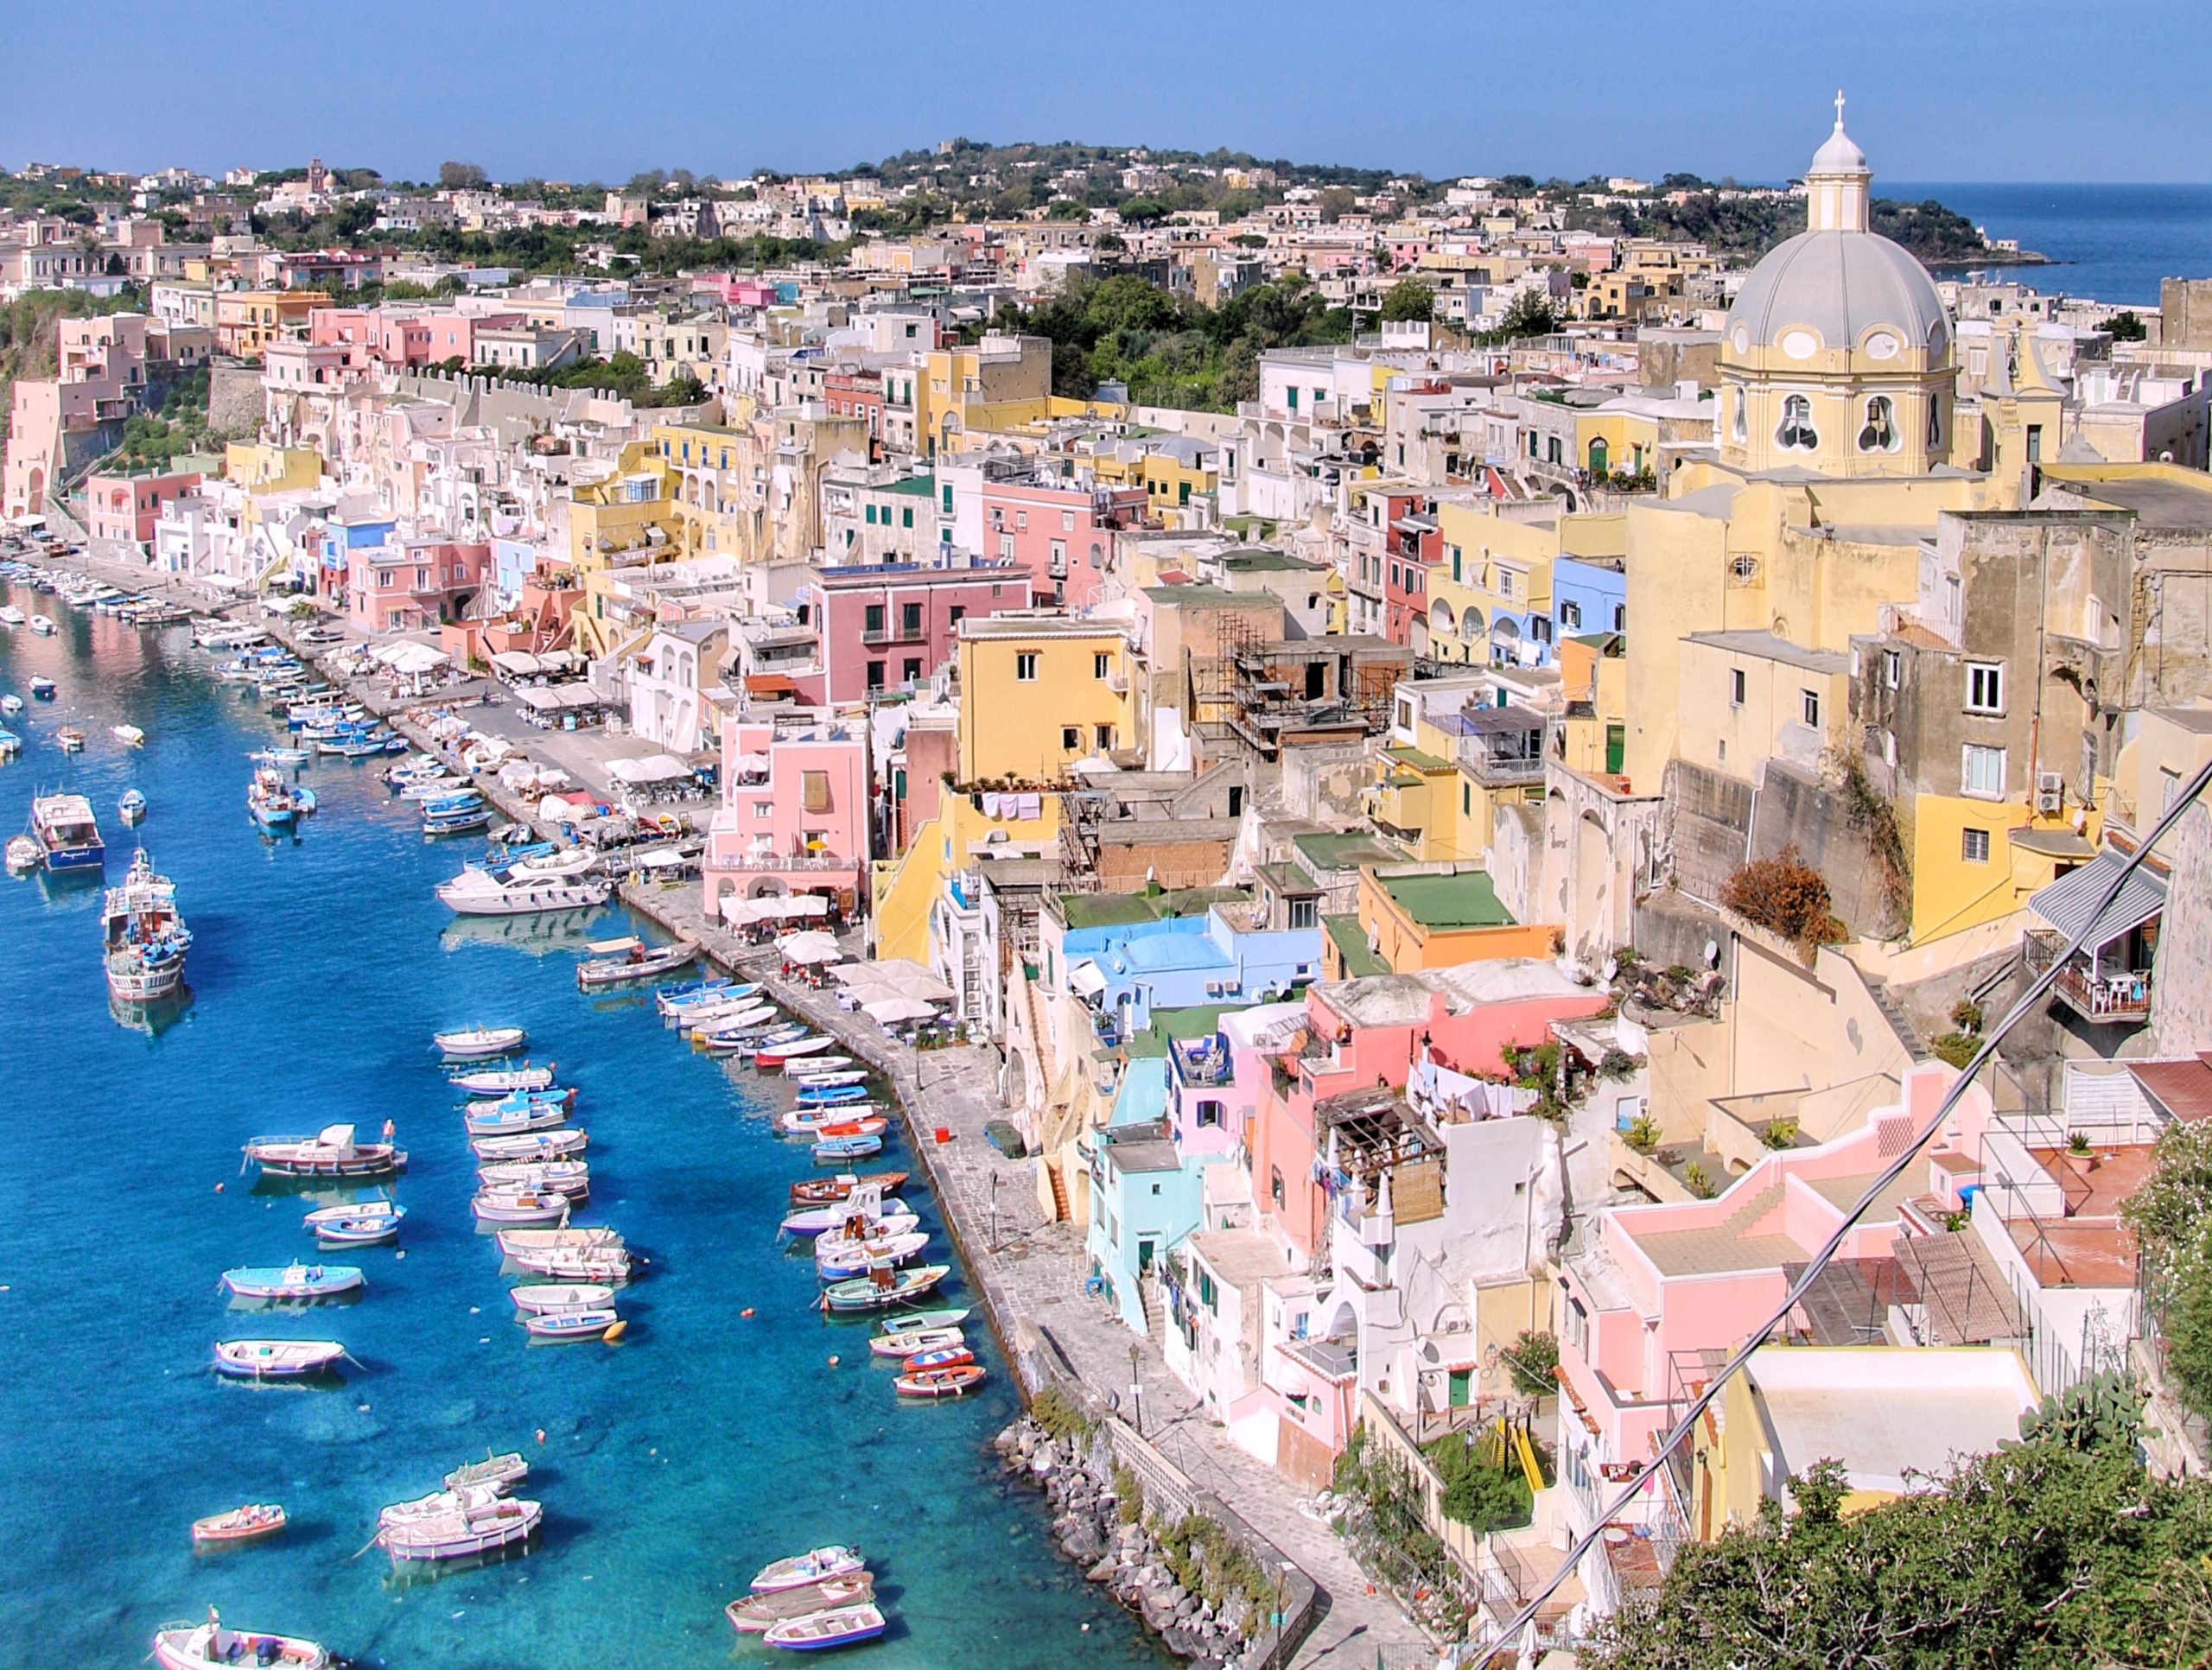 Isola di Procida capitale italiana della cultura 2022. L'immagine mostra una bellissima veduta su Procida dall'alto